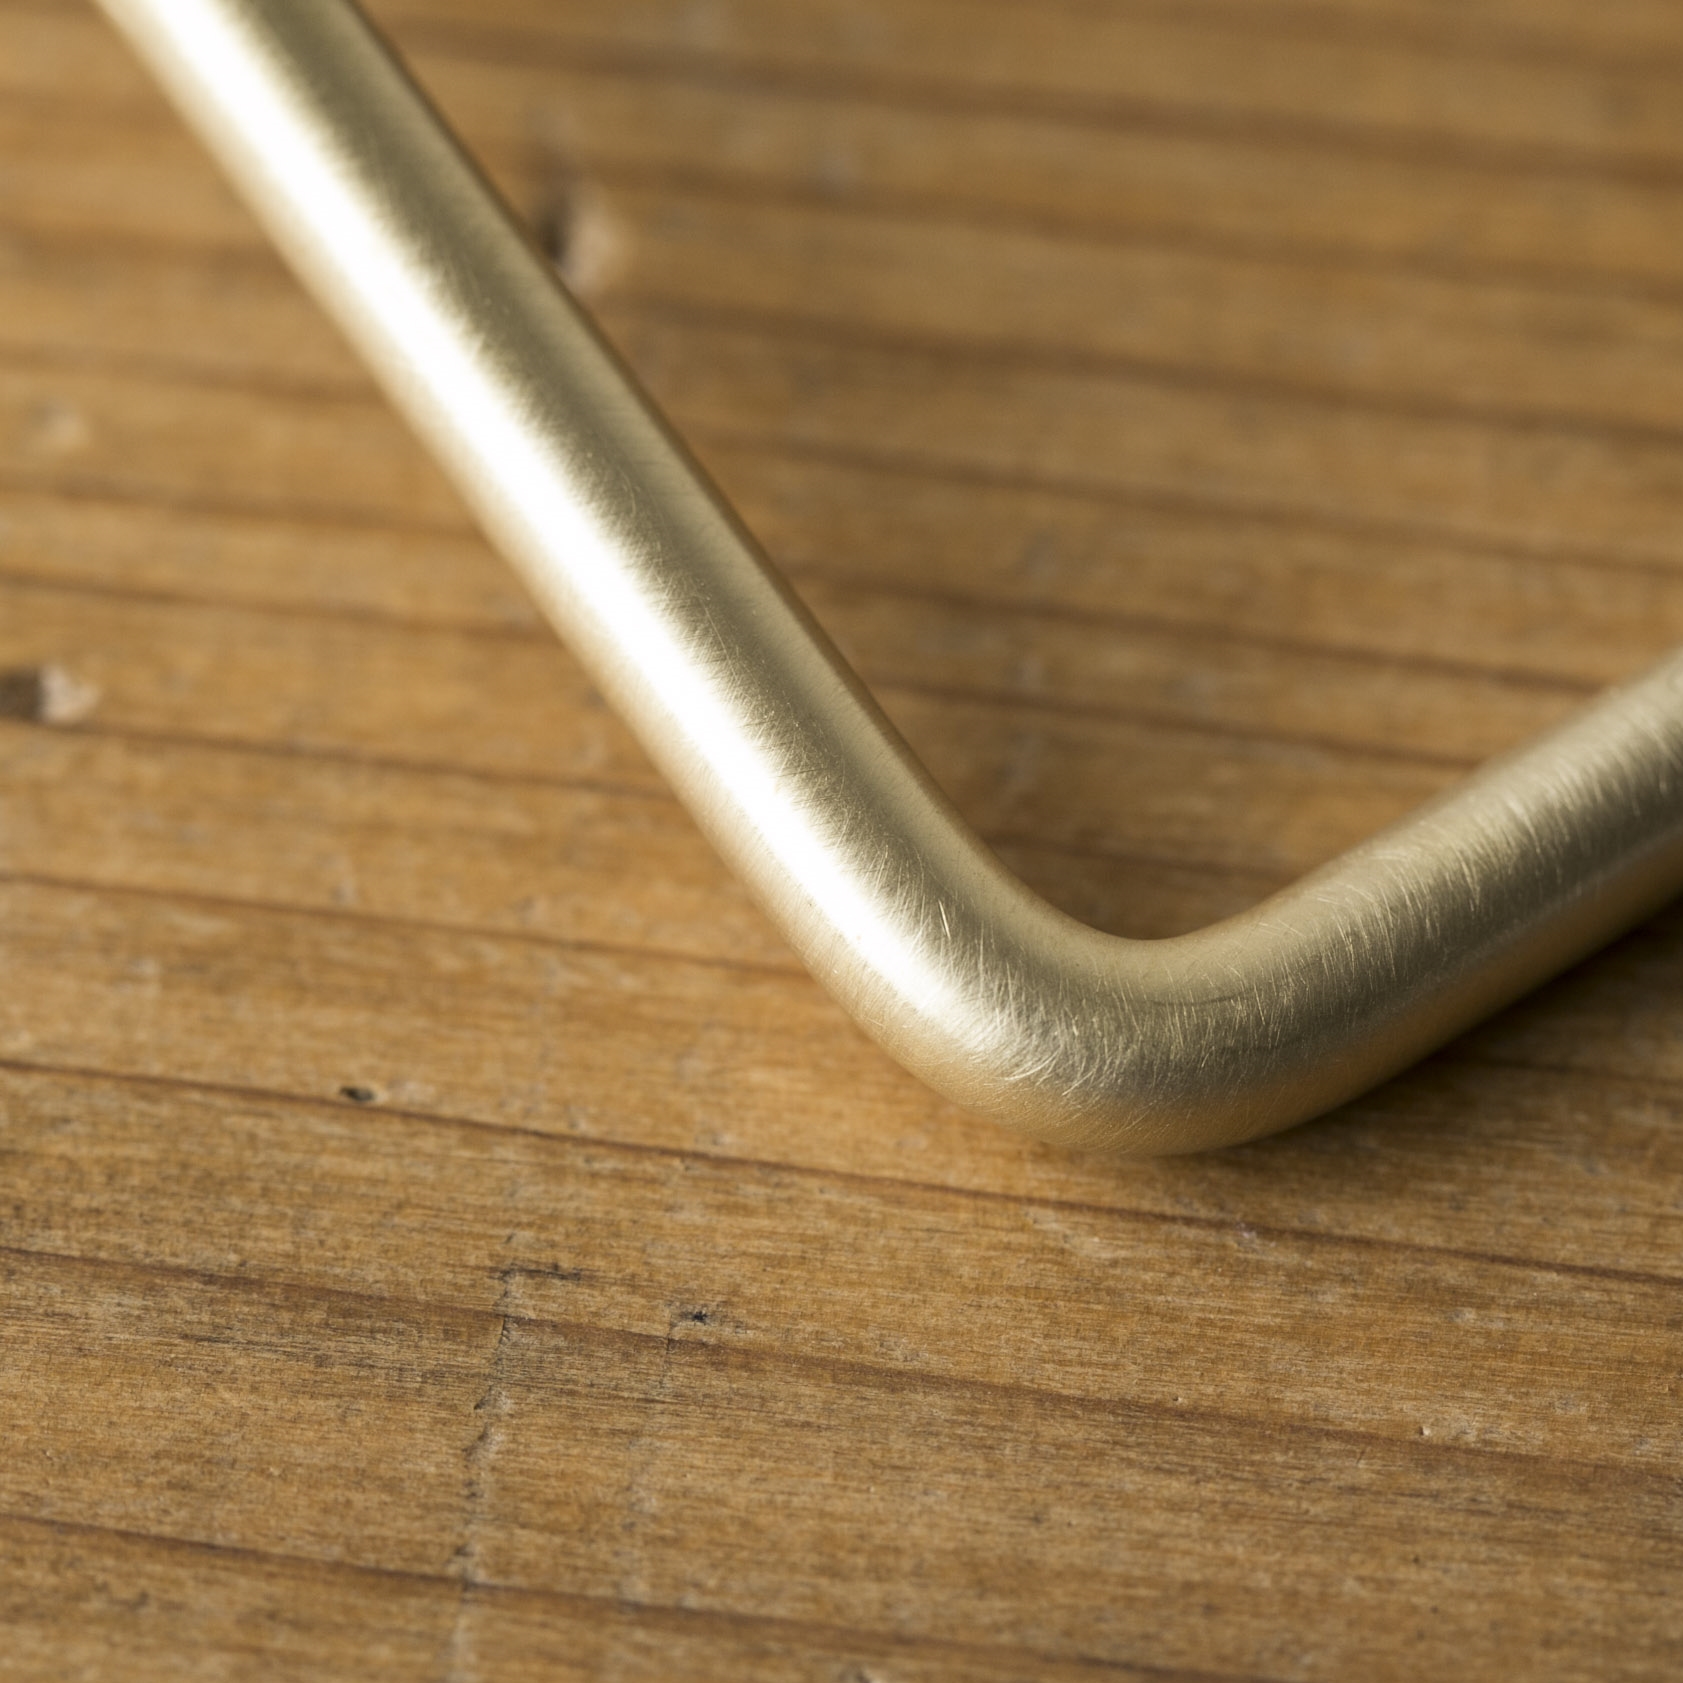 千葉工作所/Paper stocker Brass（ペーパーストッカー 真鍮） - トイレットペーパーの交換が楽な、絵になるストッカー